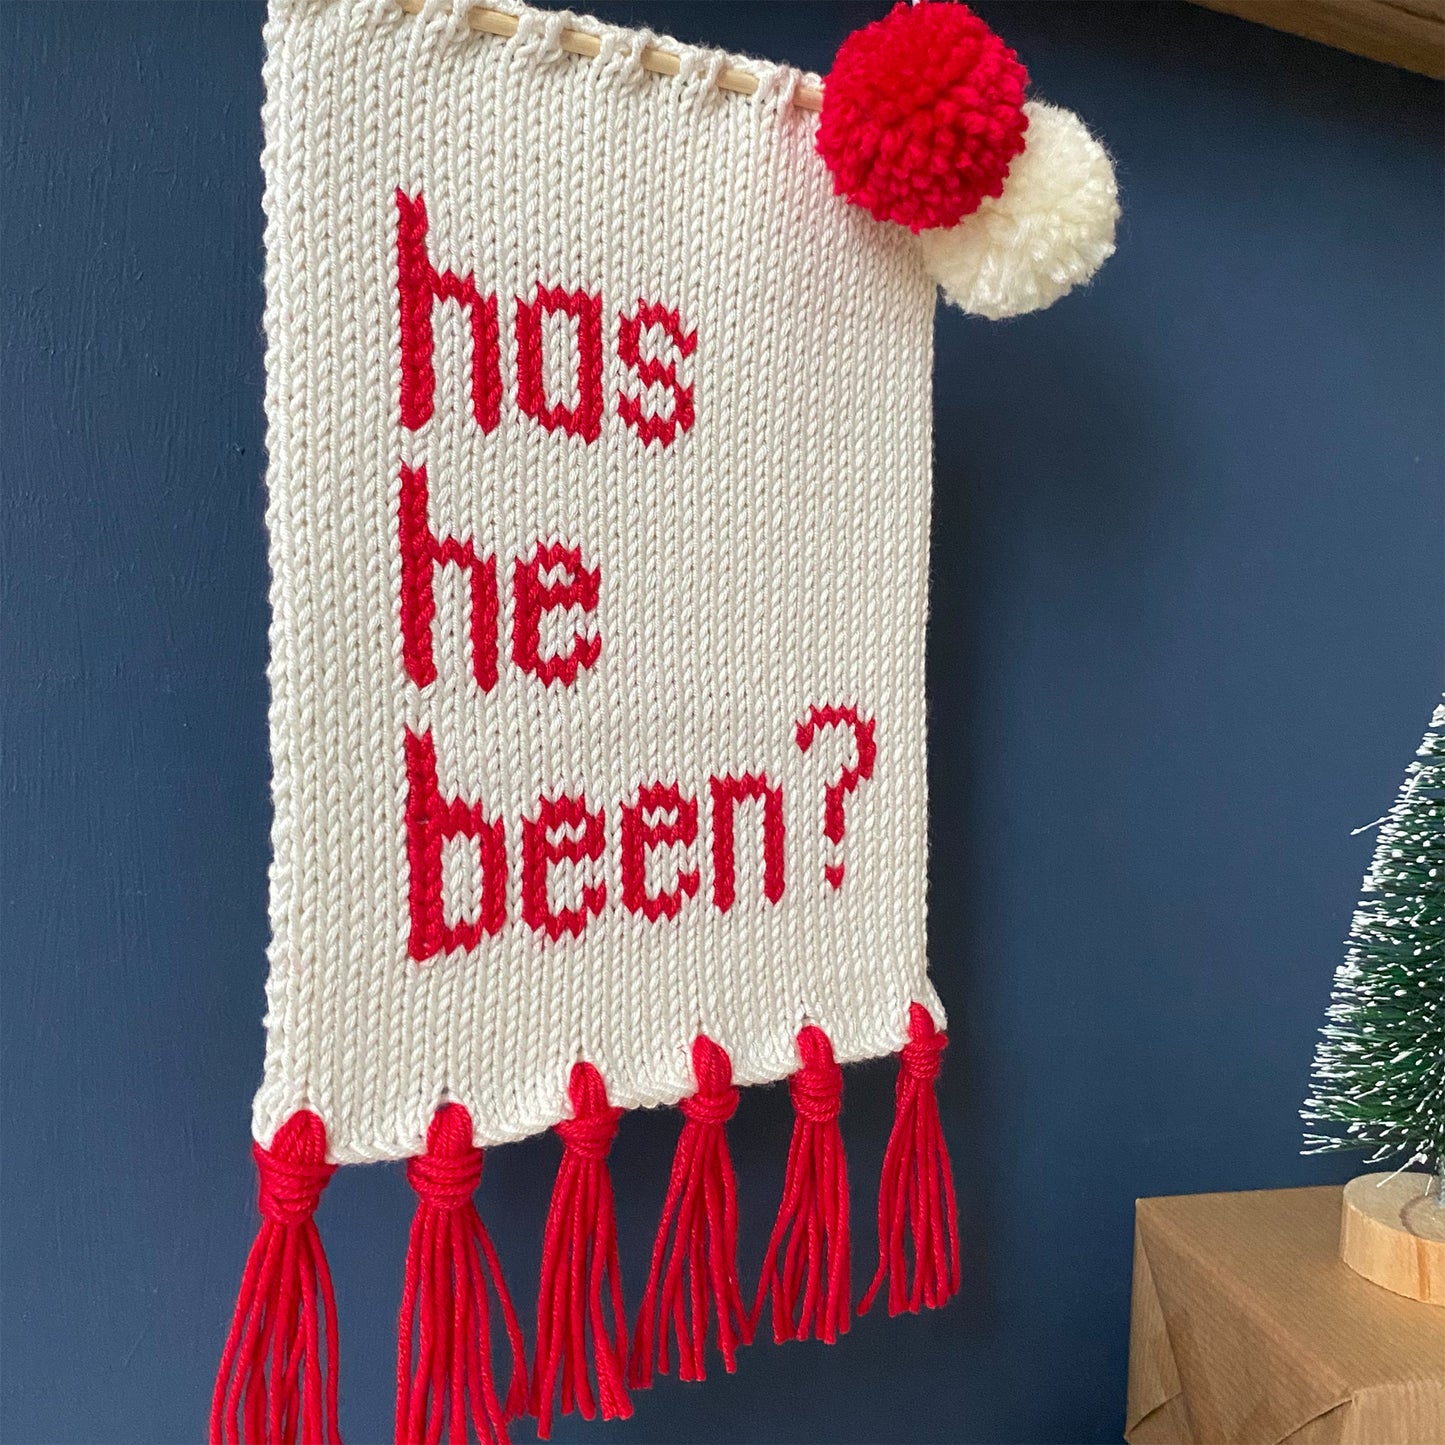 'Has He Been?' Christmas Wall Hanging